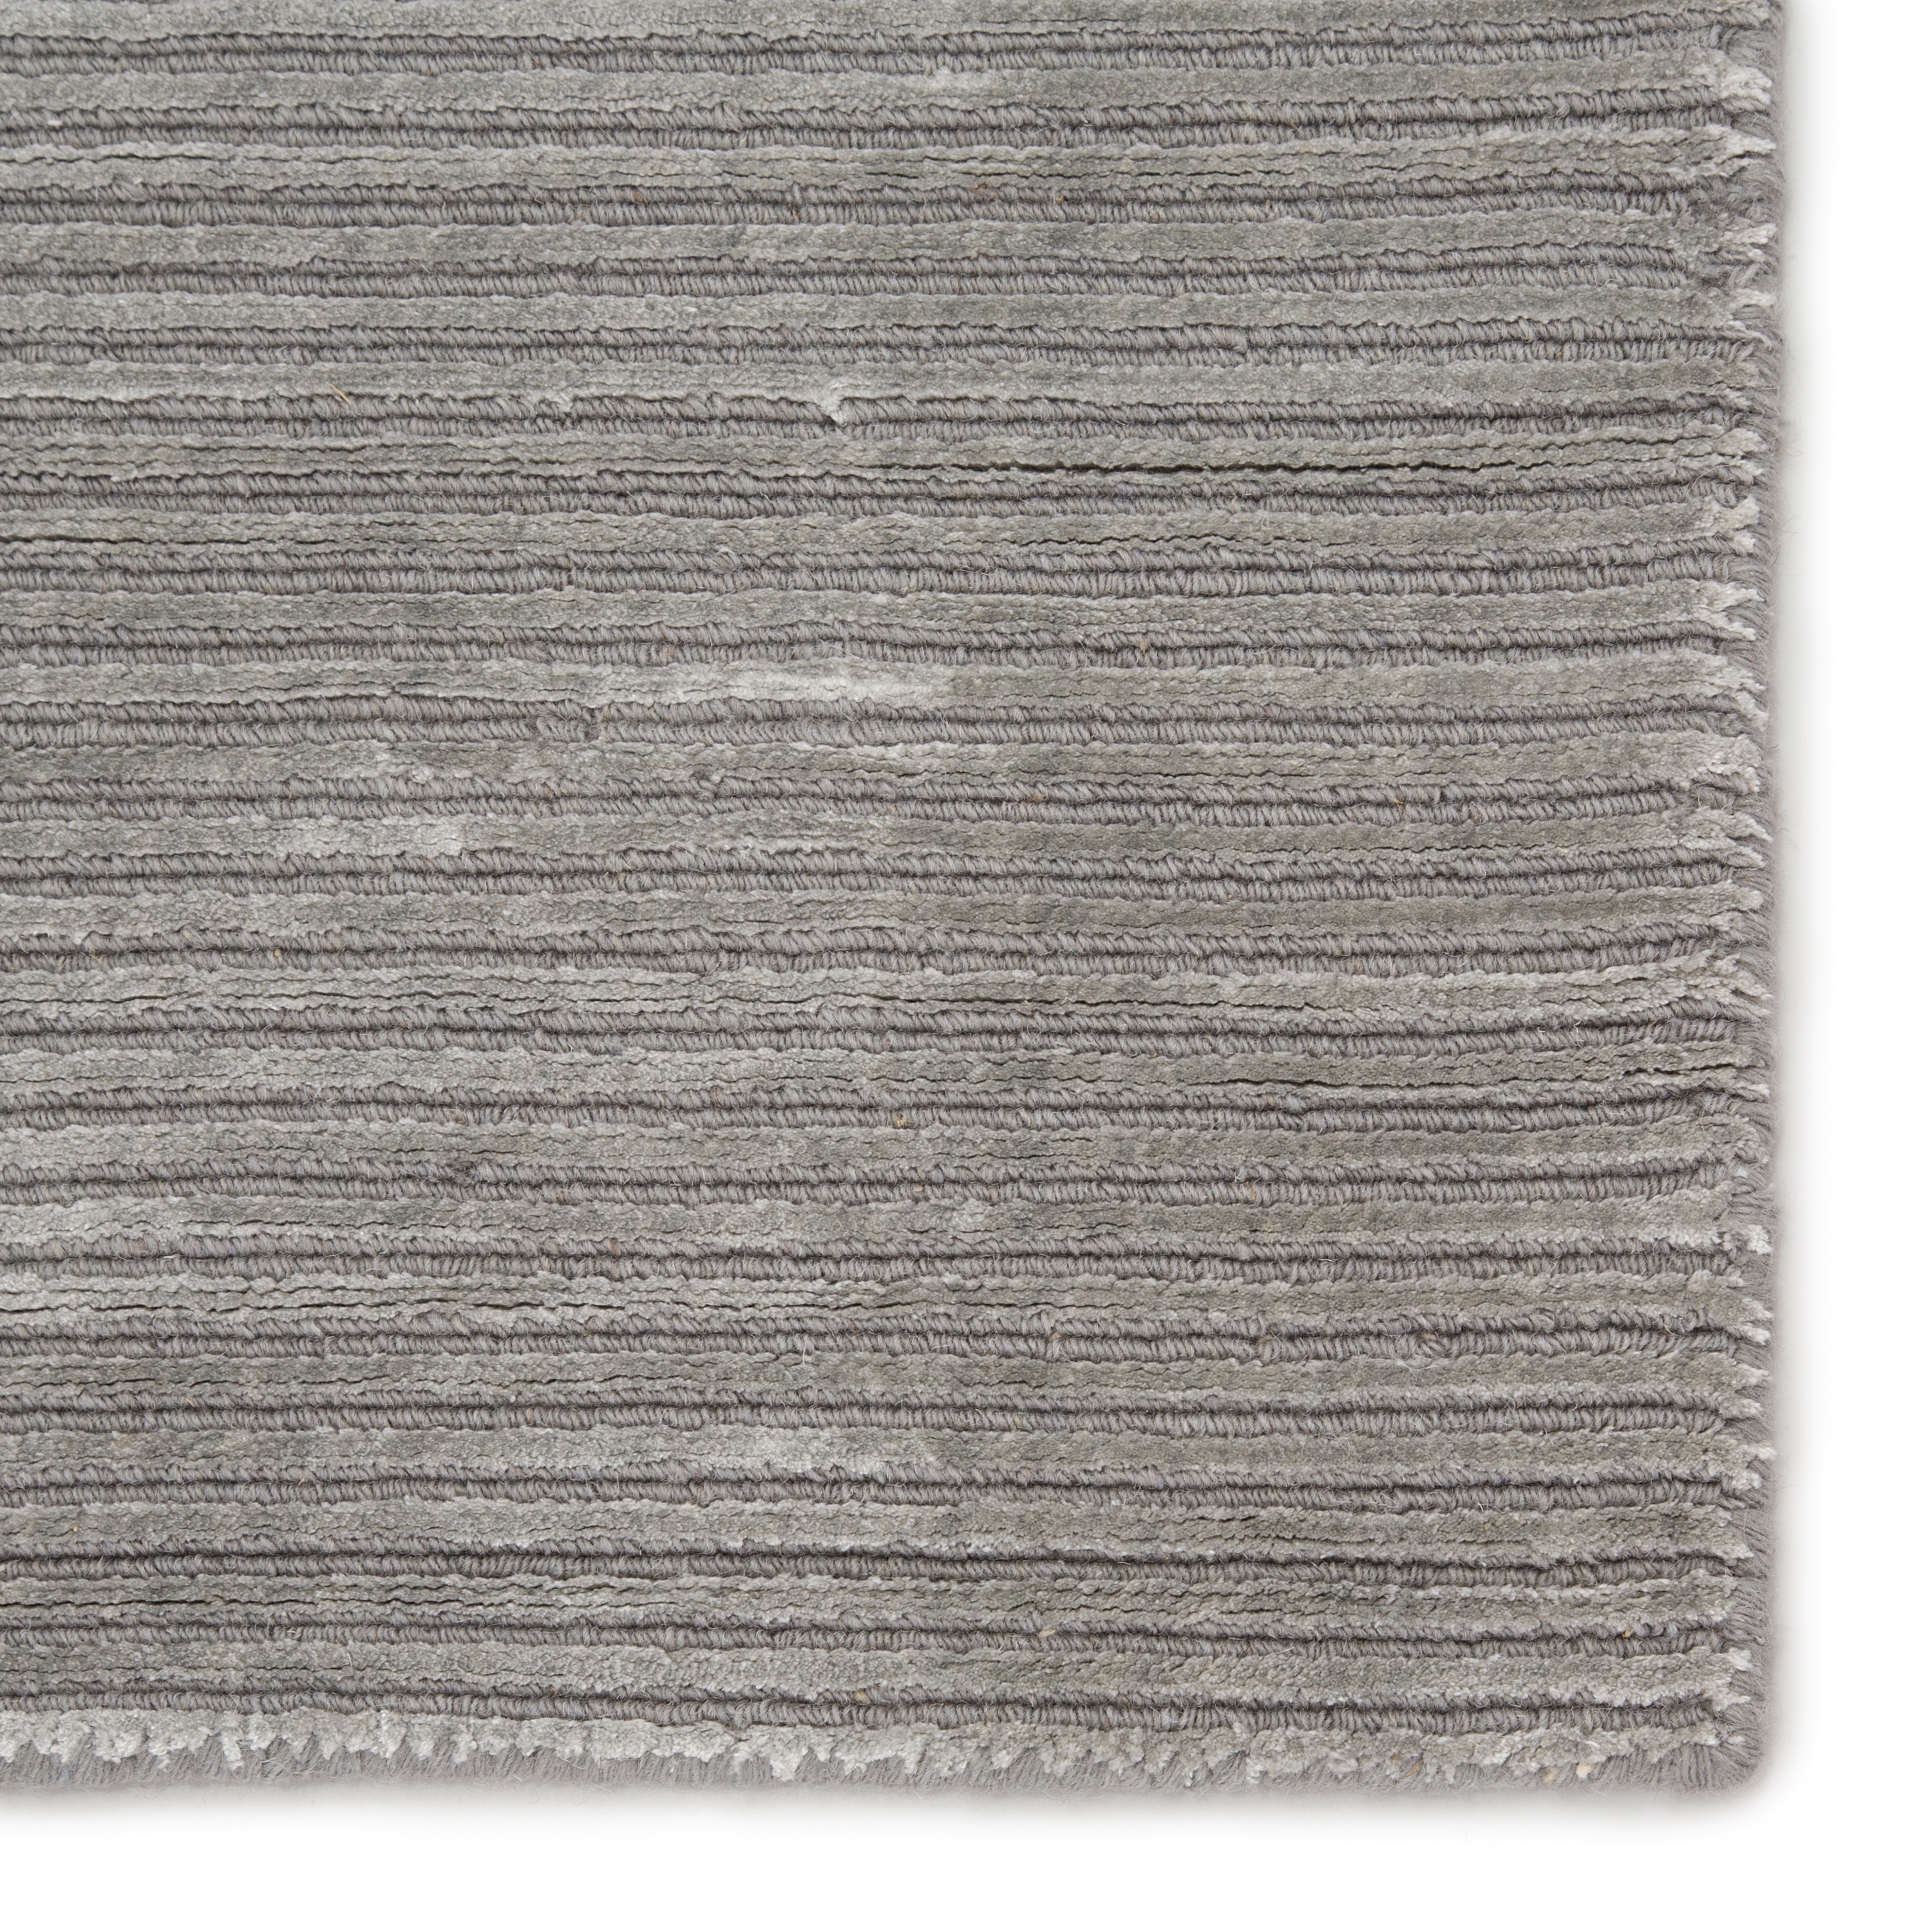 Basis Handmade Solid Gray/ Silver Area Rug (12'X15') - Image 3